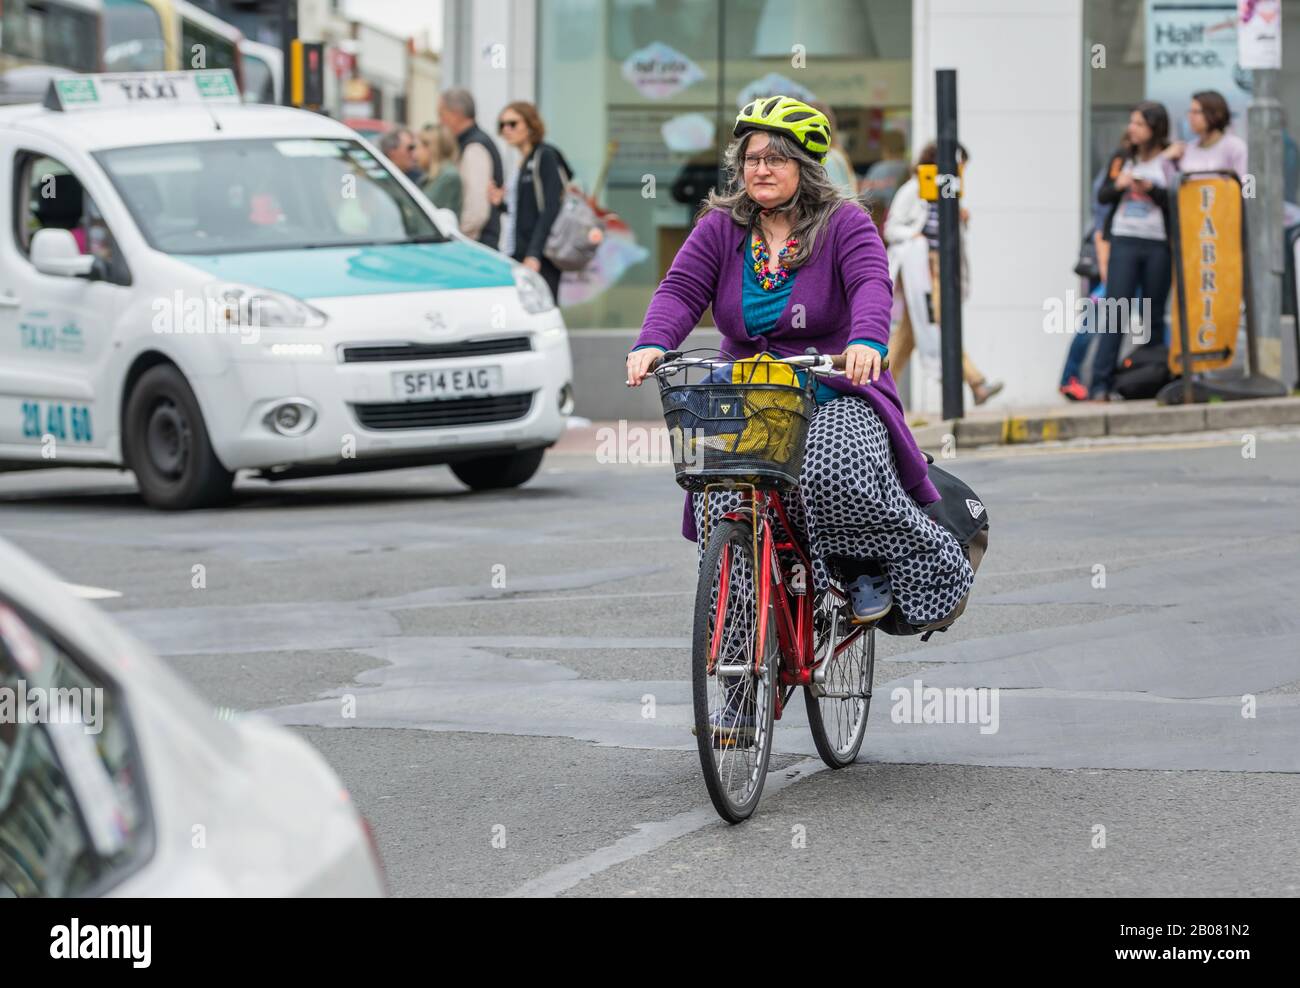 Radfahrerin mittleren Alters, die einen Helm trägt, mit dem Fahrrad auf  einer Straße in der geschäftigen Stadt Brighton, England, Großbritannien.  Frau, die mit dem Fahrrad unterwegs ist Stockfotografie - Alamy